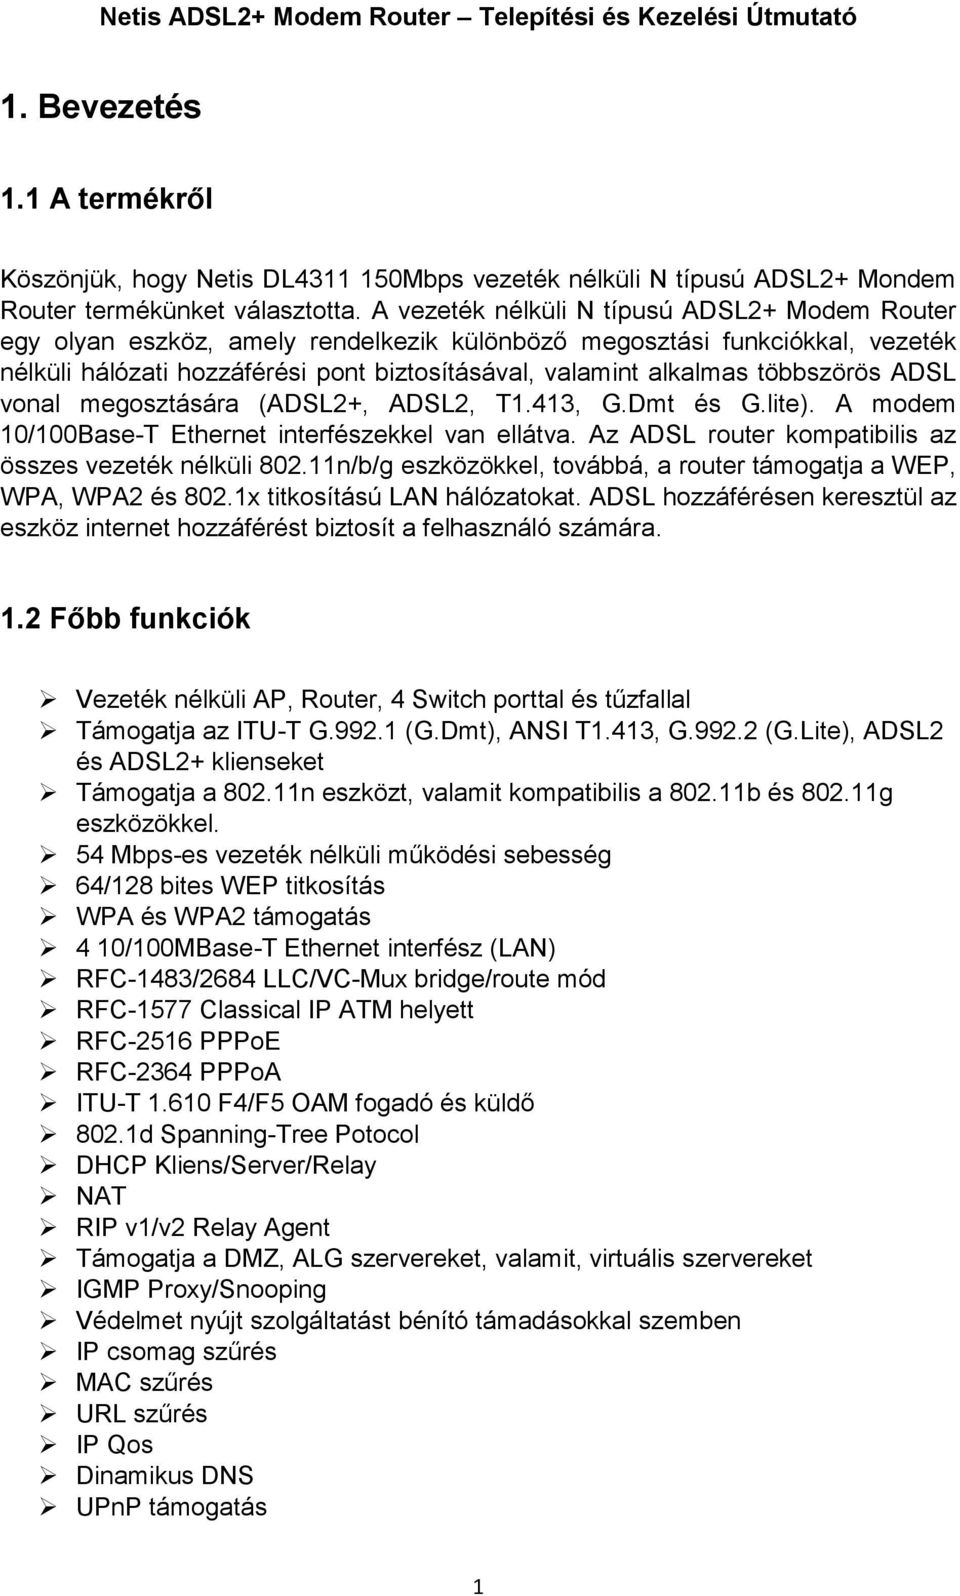 többszörös ADSL vonal megosztására (ADSL2+, ADSL2, T1.413, G.Dmt és G.lite). A modem 10/100Base-T Ethernet interfészekkel van ellátva. Az ADSL router kompatibilis az összes vezeték nélküli 802.